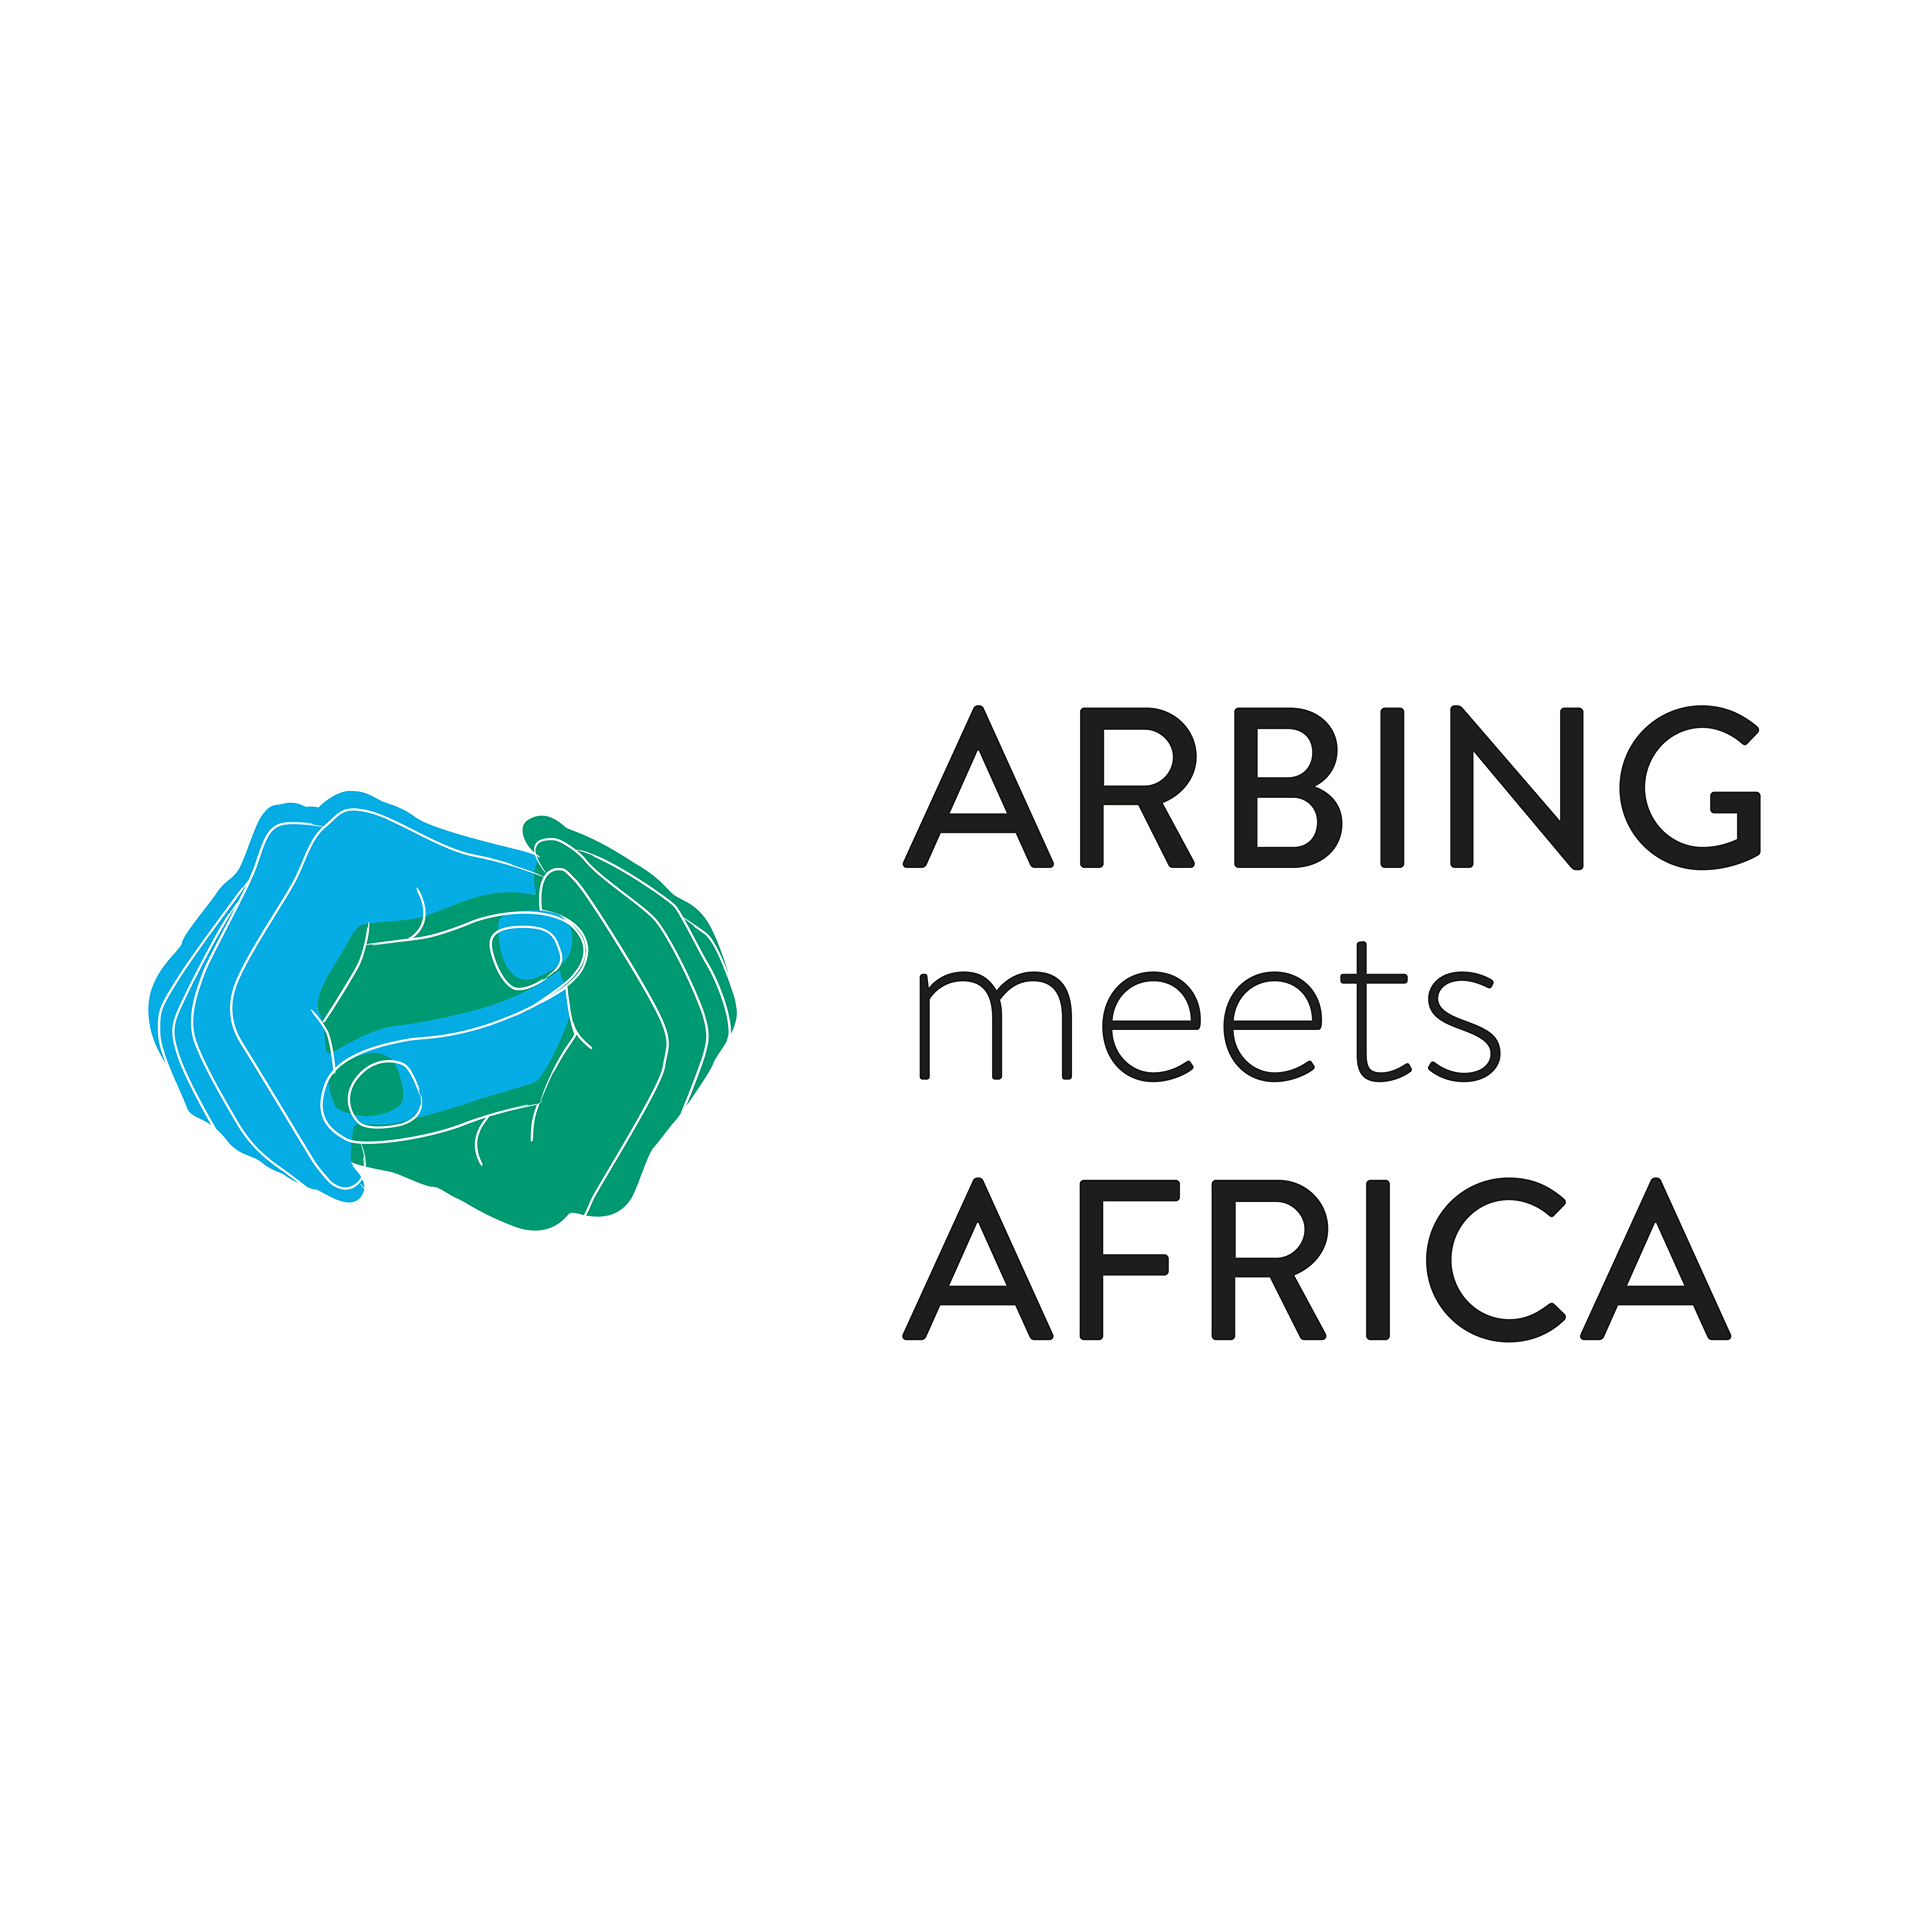 Arbing meets Africa